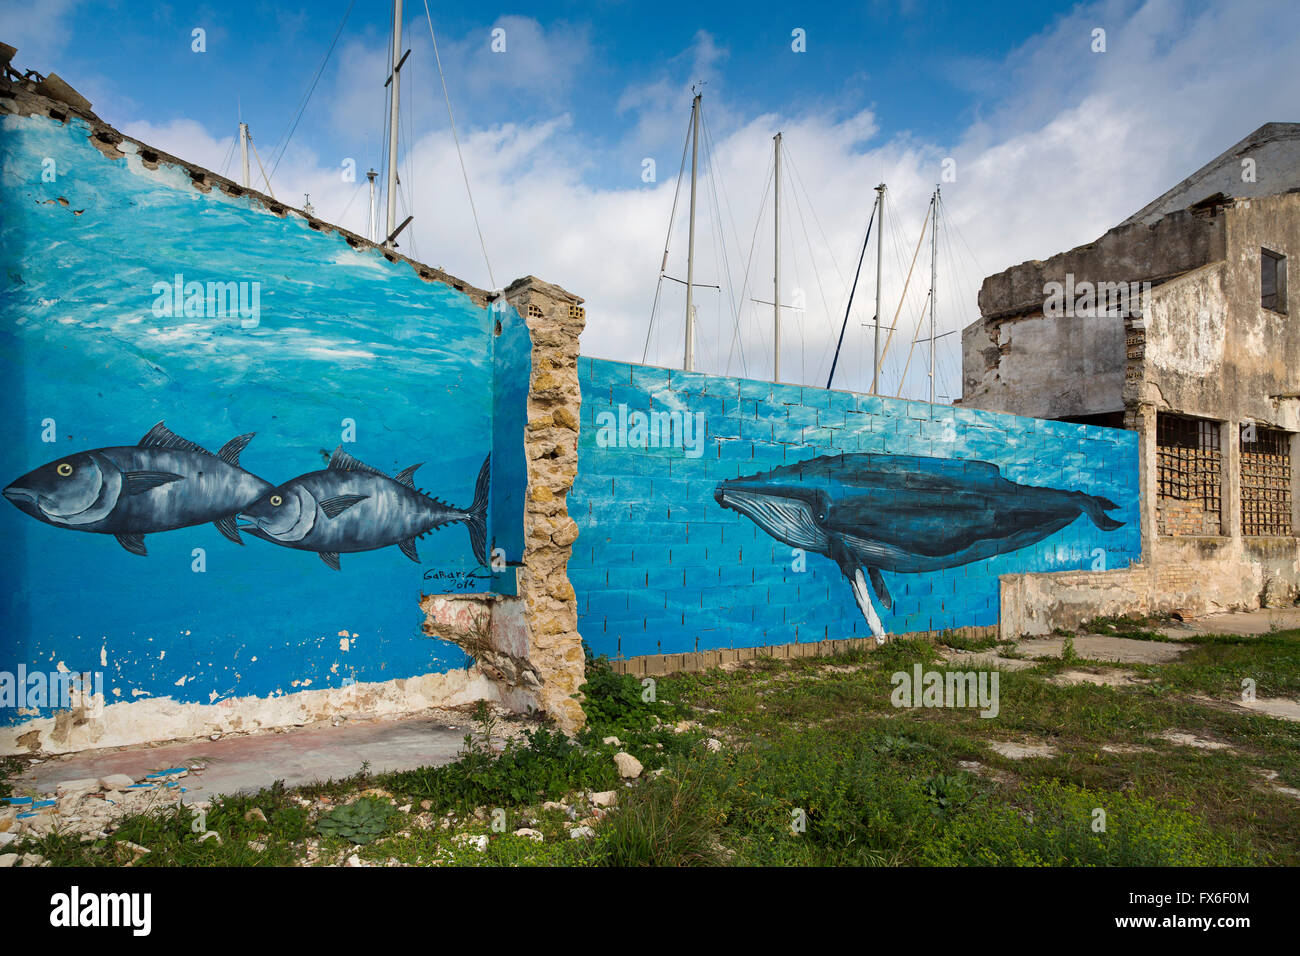 La pintura de la pared de atún. Sancti Petri, Chiclana de la Frontera, Cádiz Cádiz, Andalucía, España. Europa Foto de stock